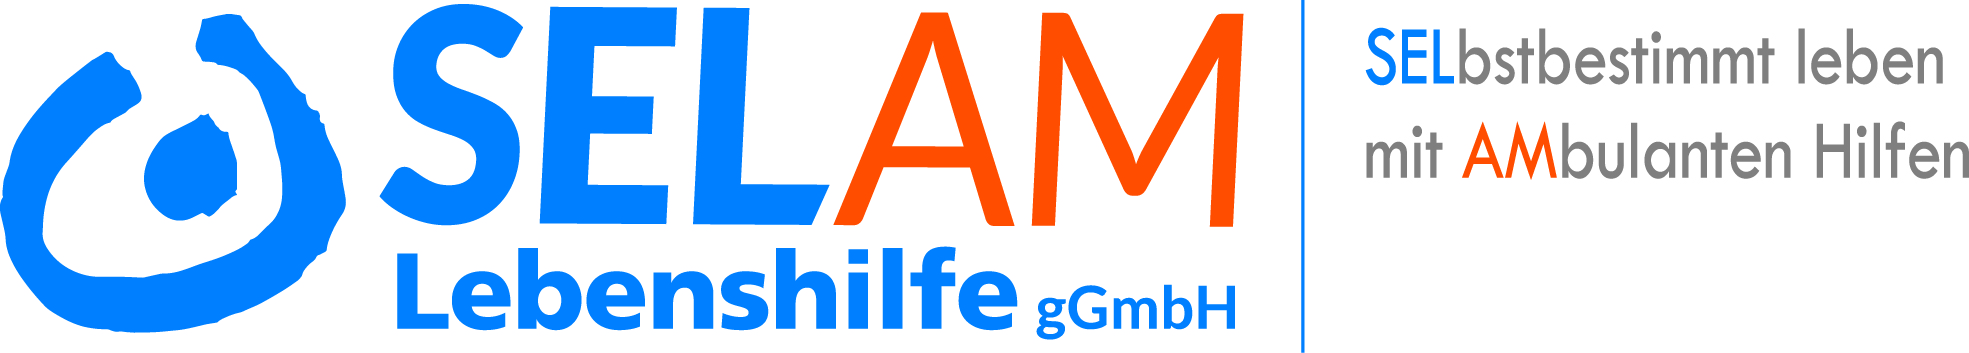 SELAM Lebenshilfe gGmbH Logo